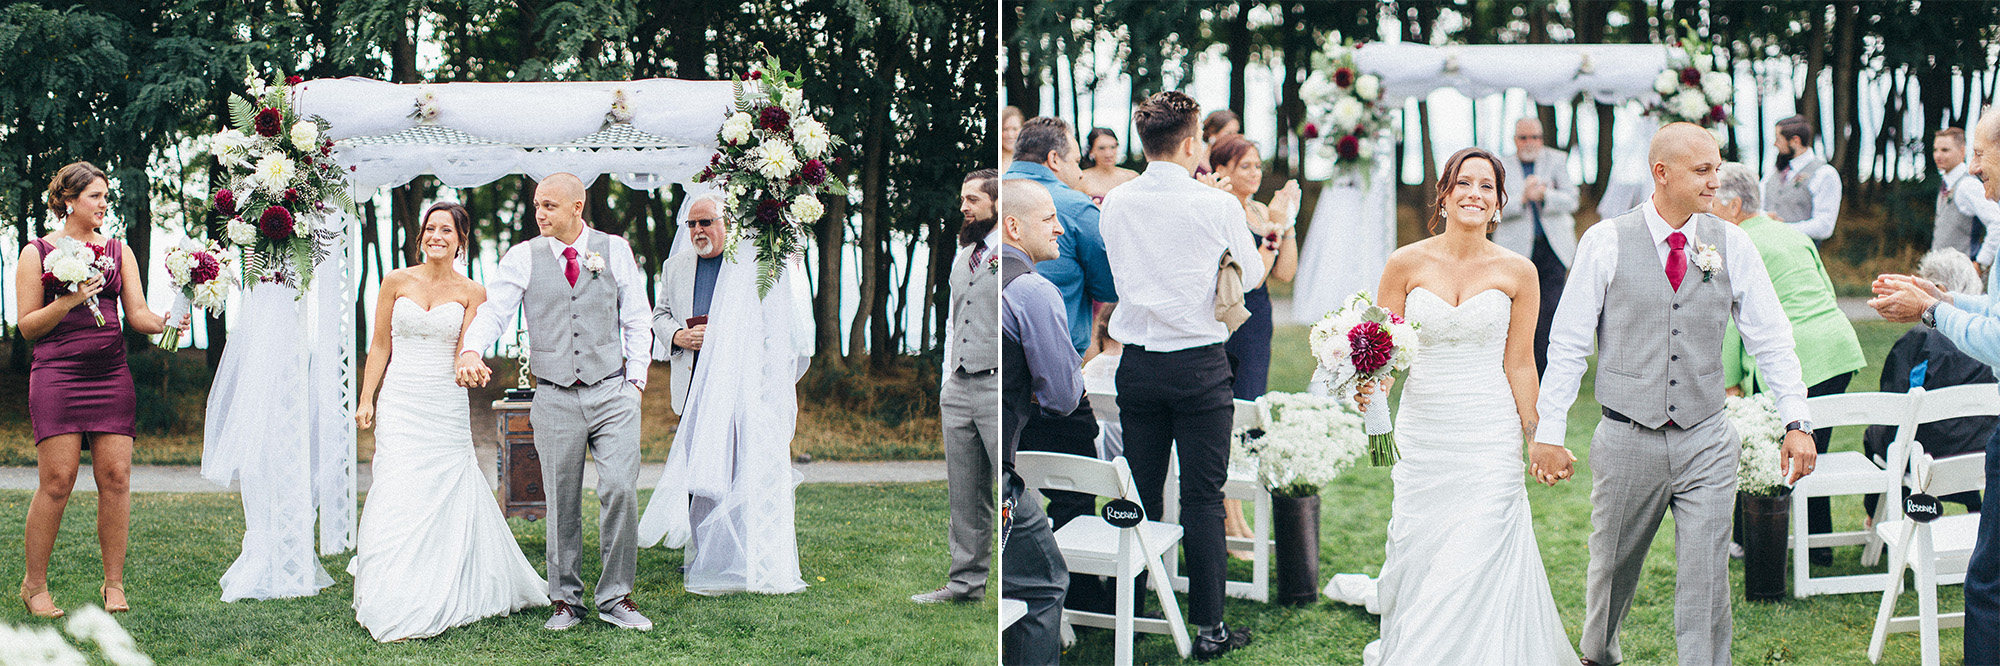 Seattle Washington Engagement & Wedding Photographer